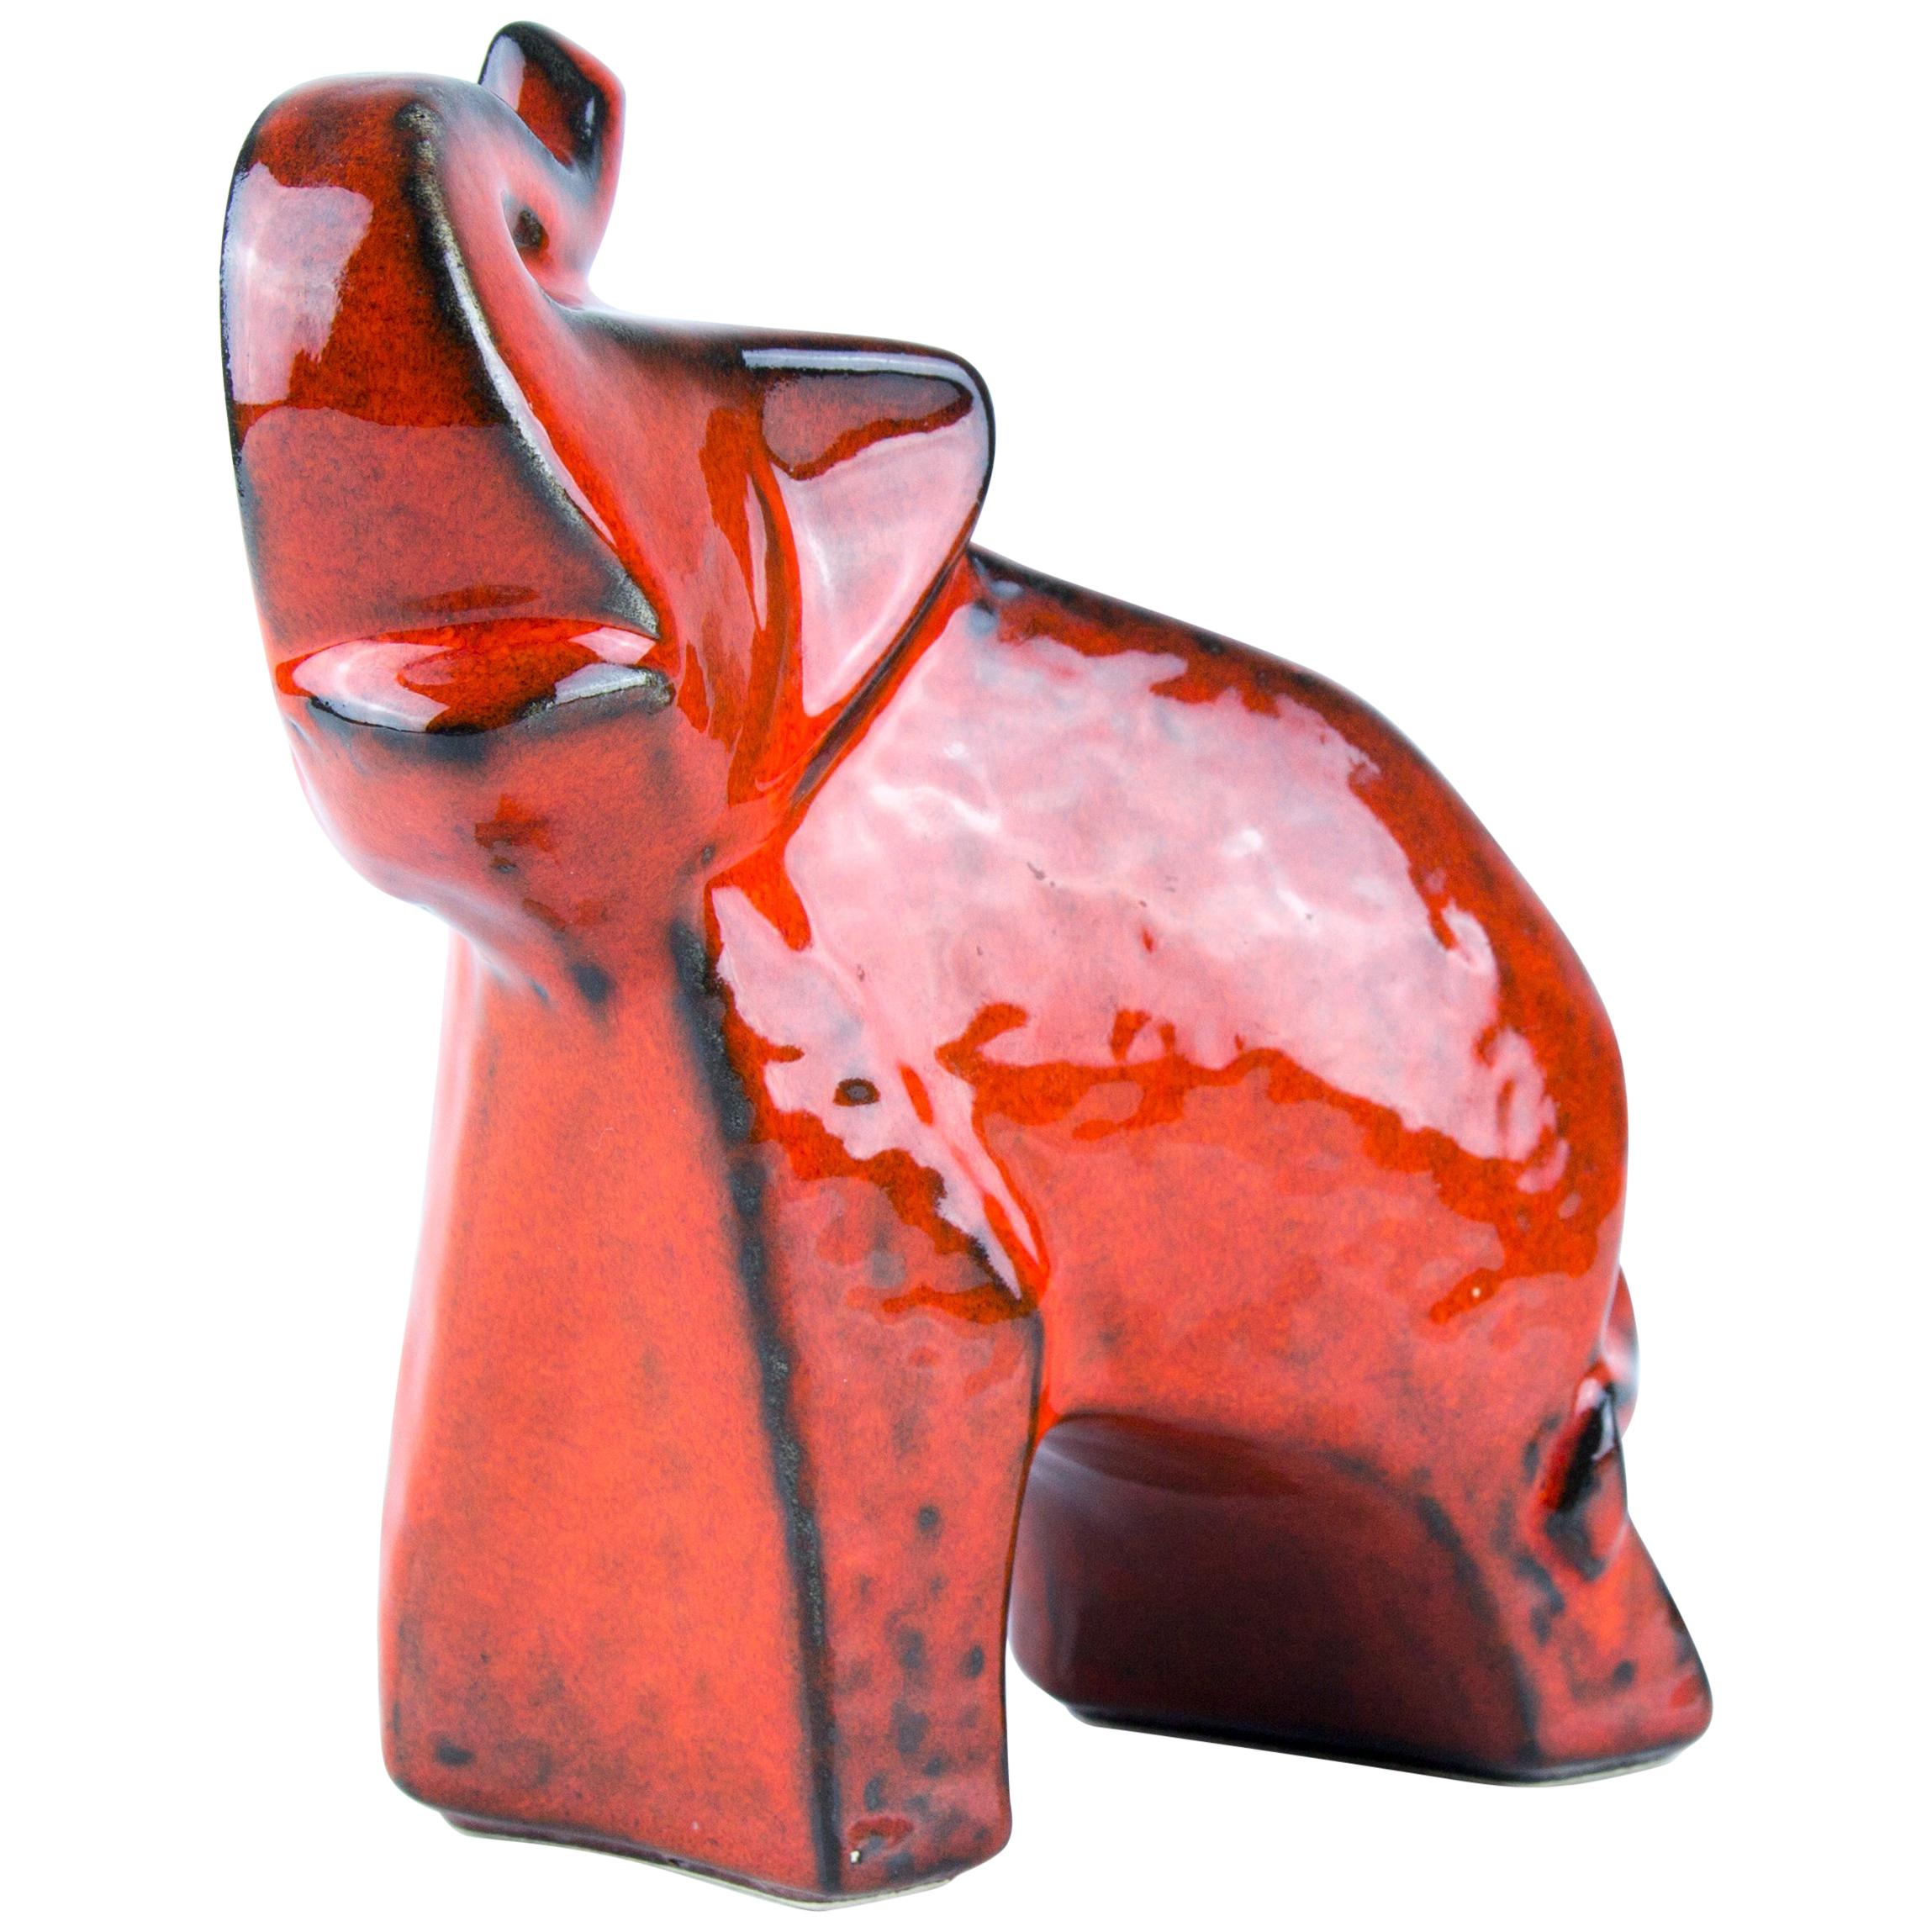 West German Pottery Red Glazed Ceramic Elephant Figurine by Bay Keramik, 1960s